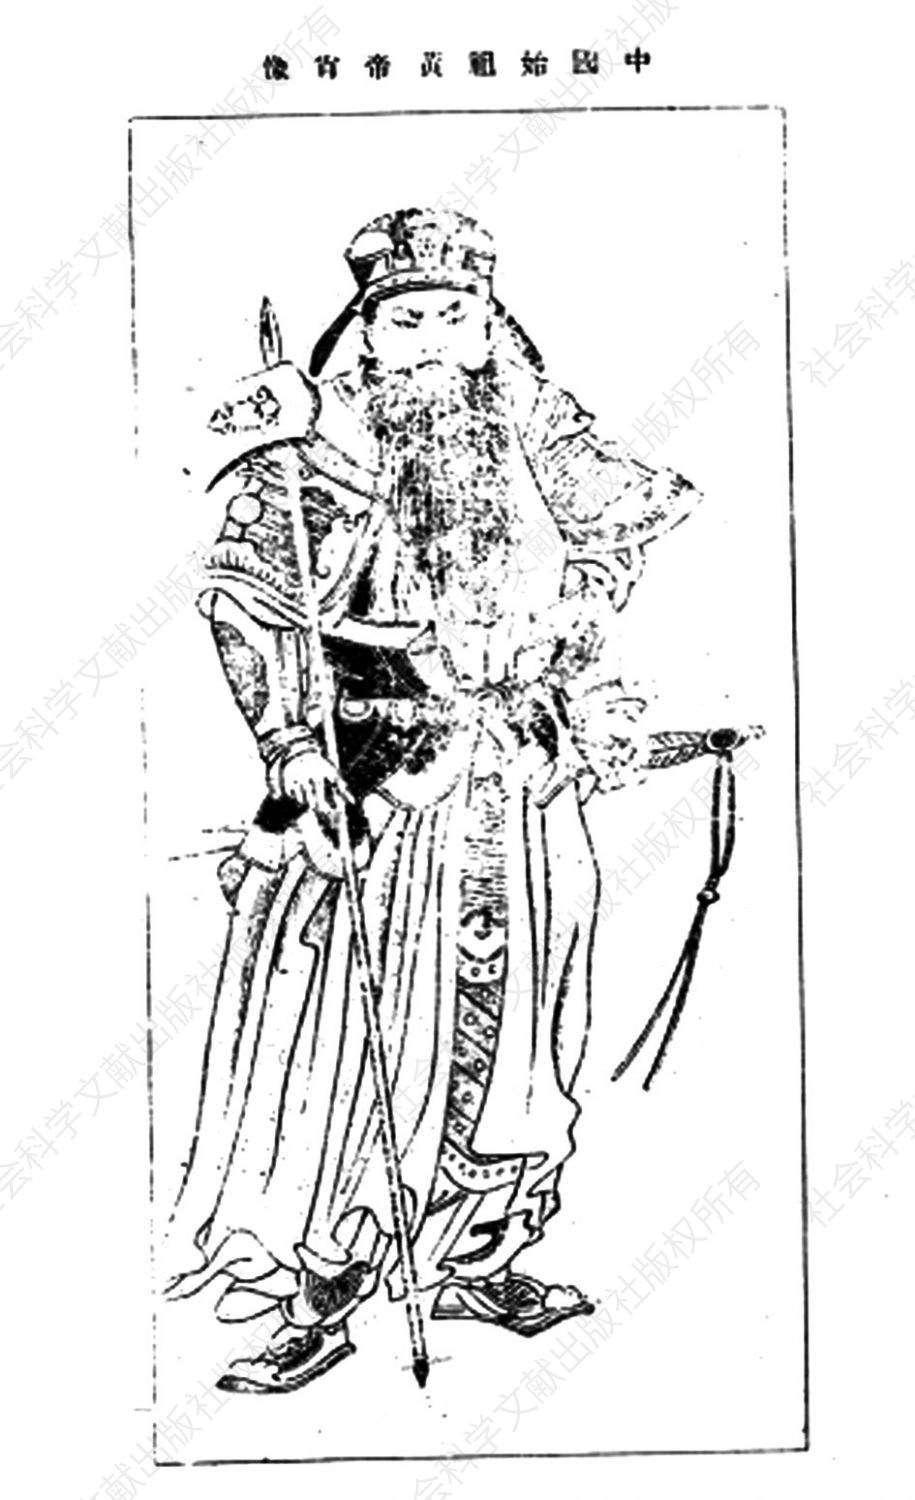 图5-5 黄帝画像（《二十世纪之支那》第1期，1903年）